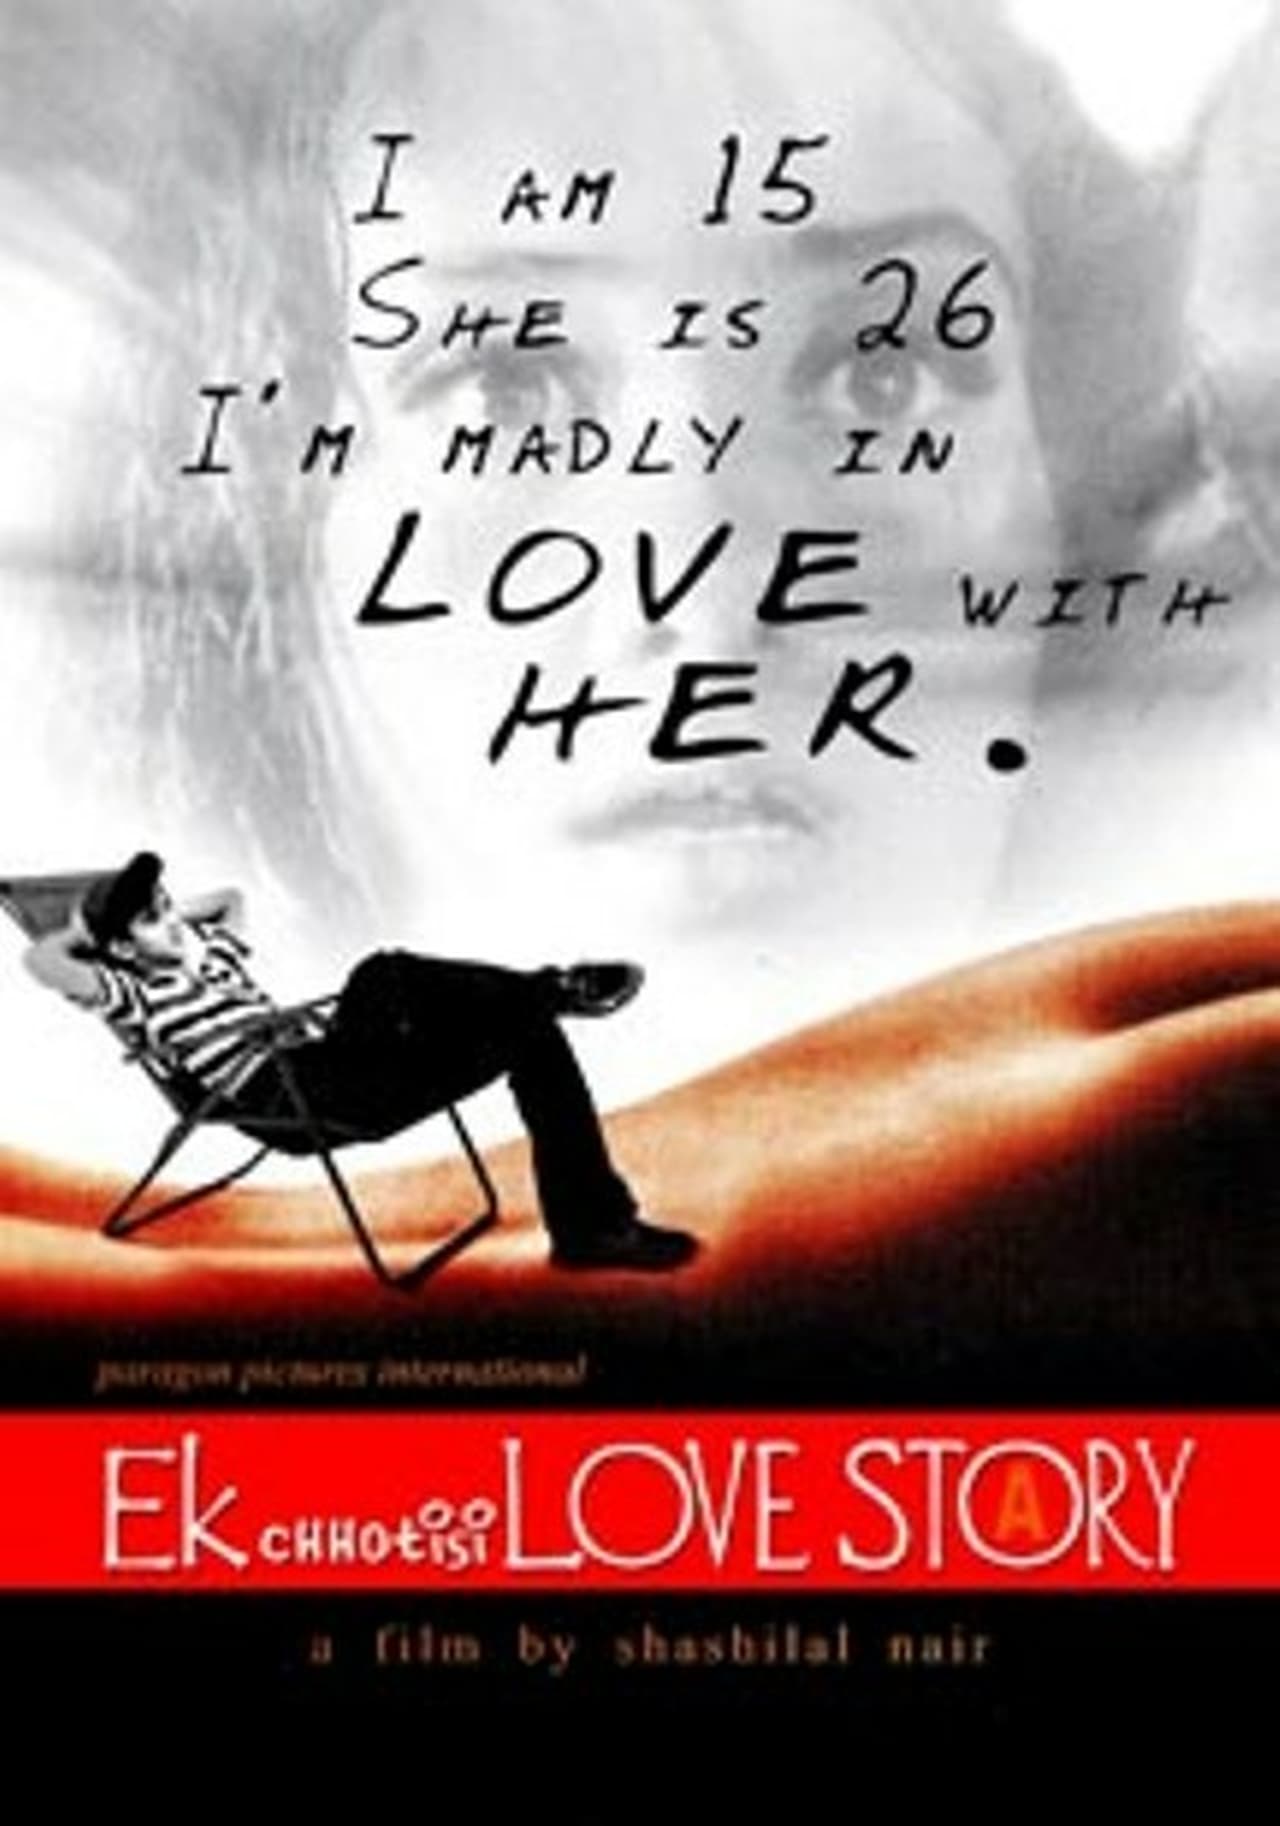 Ek Chhotisi Love Story (2002) Screenshot 2 